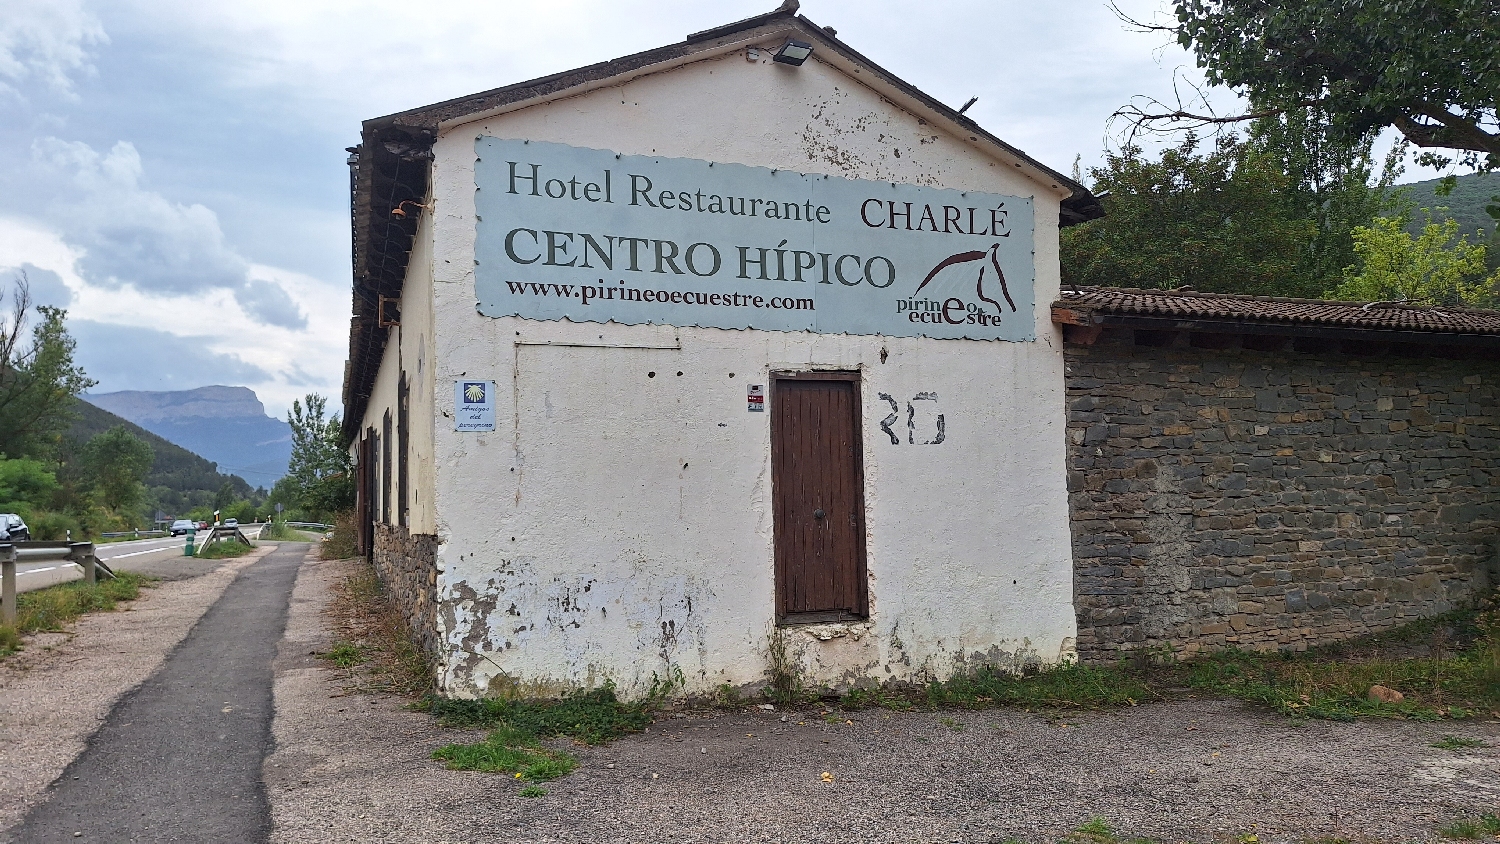 El Camino, Aragon út, a Centro Hípico, ami nem hippi centrum